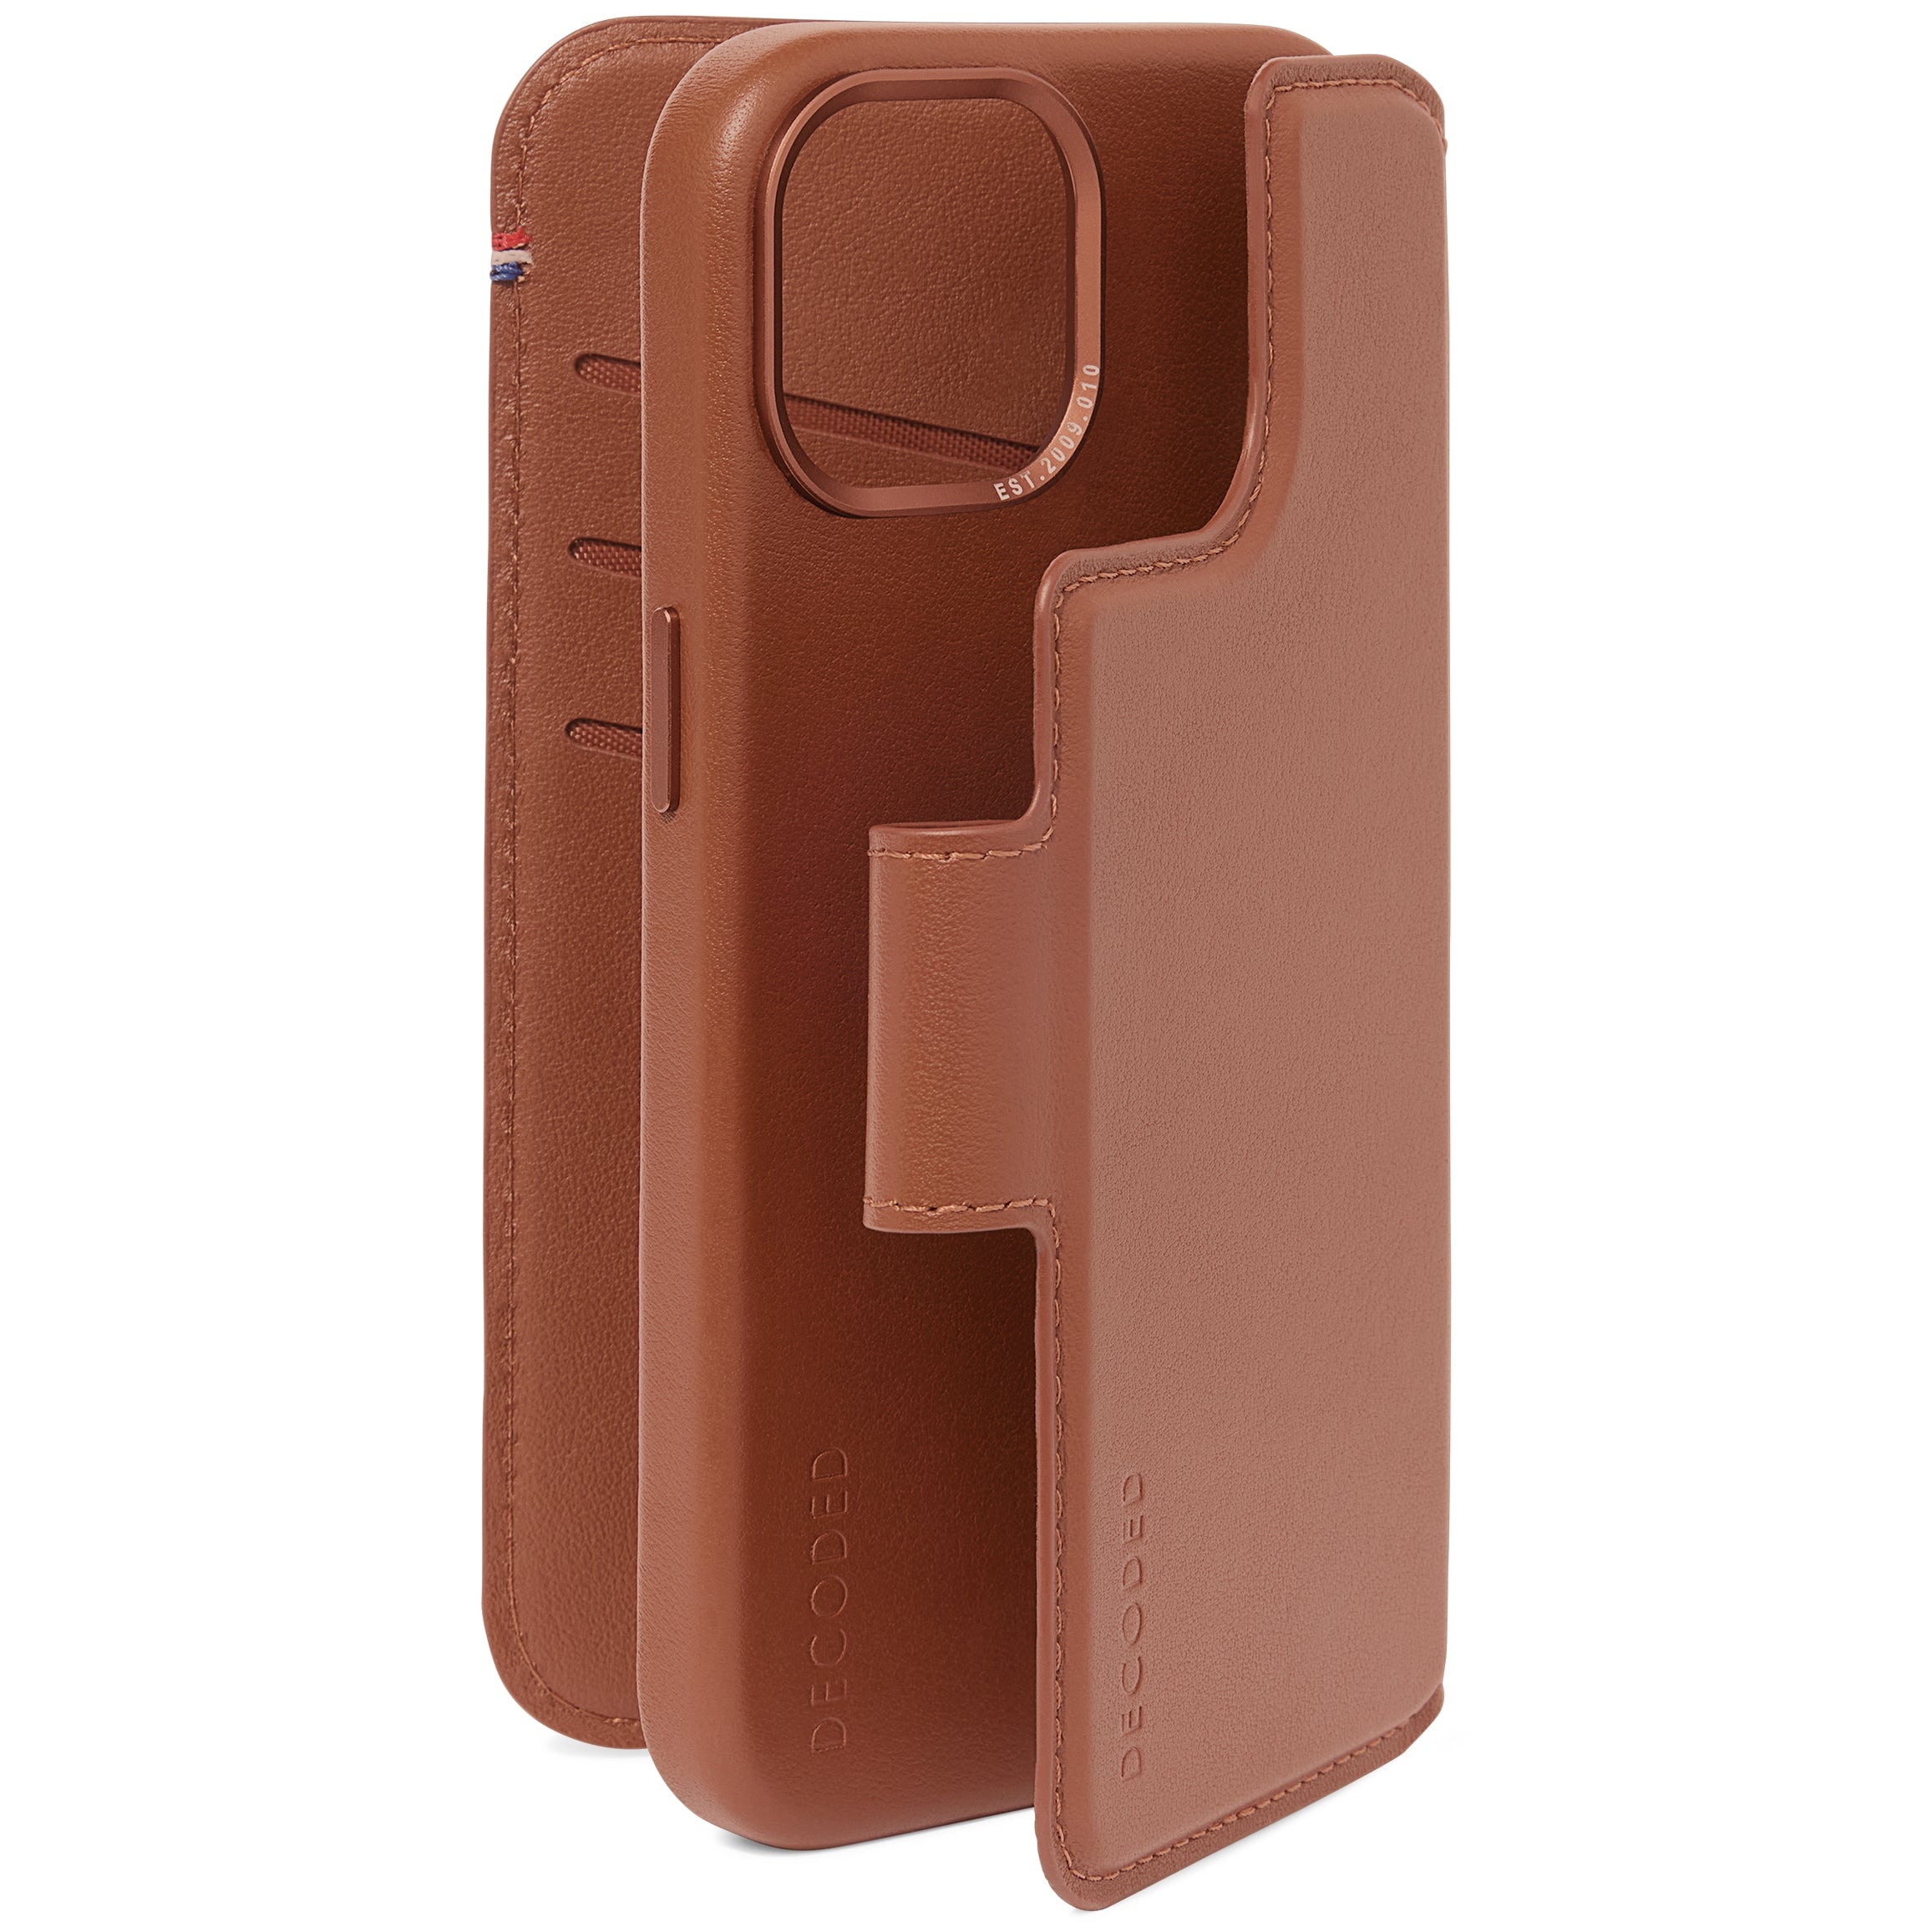 Porte-télécommande effet cuir marron, 16,5 x 13,5 x 13 cm — Qechic